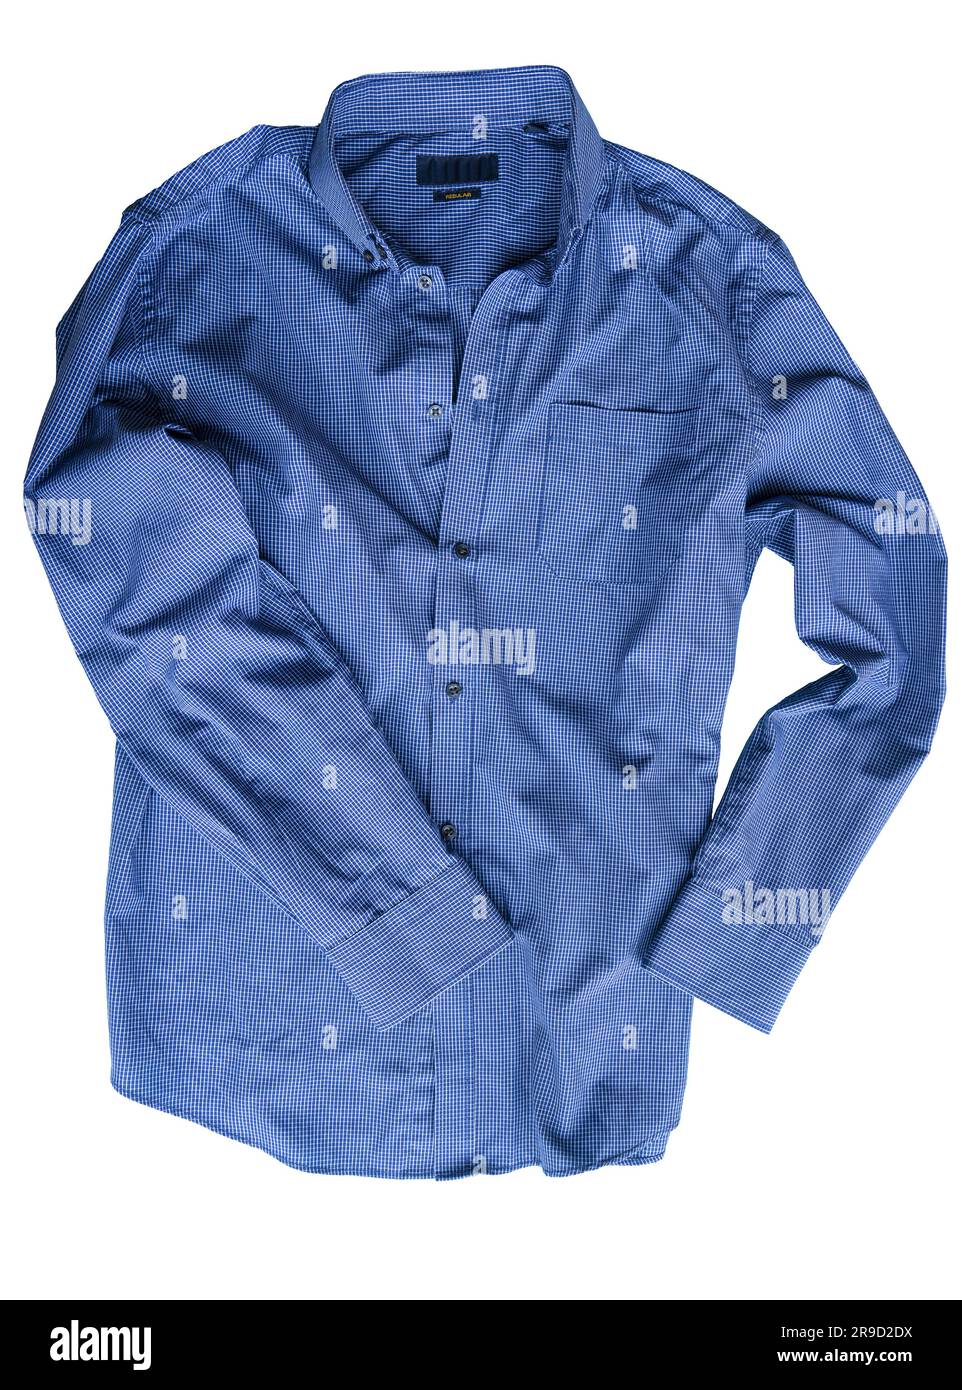 une chemise bleue isolée sur un fond transparent Banque D'Images